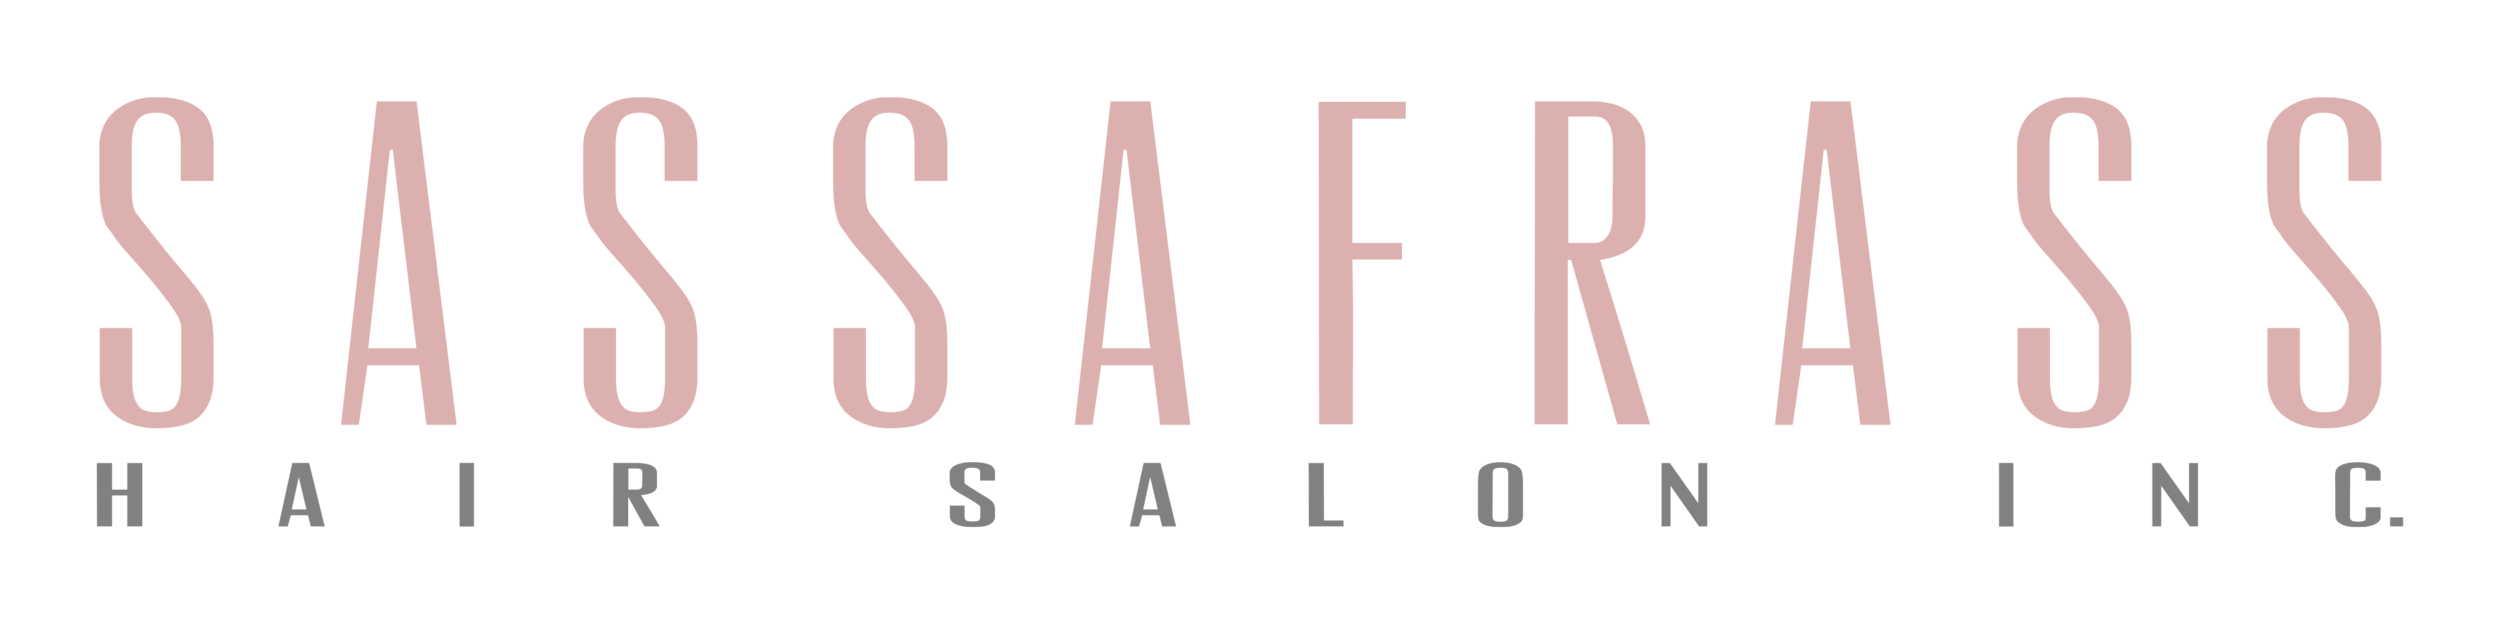 Sassafrass Hair Salon